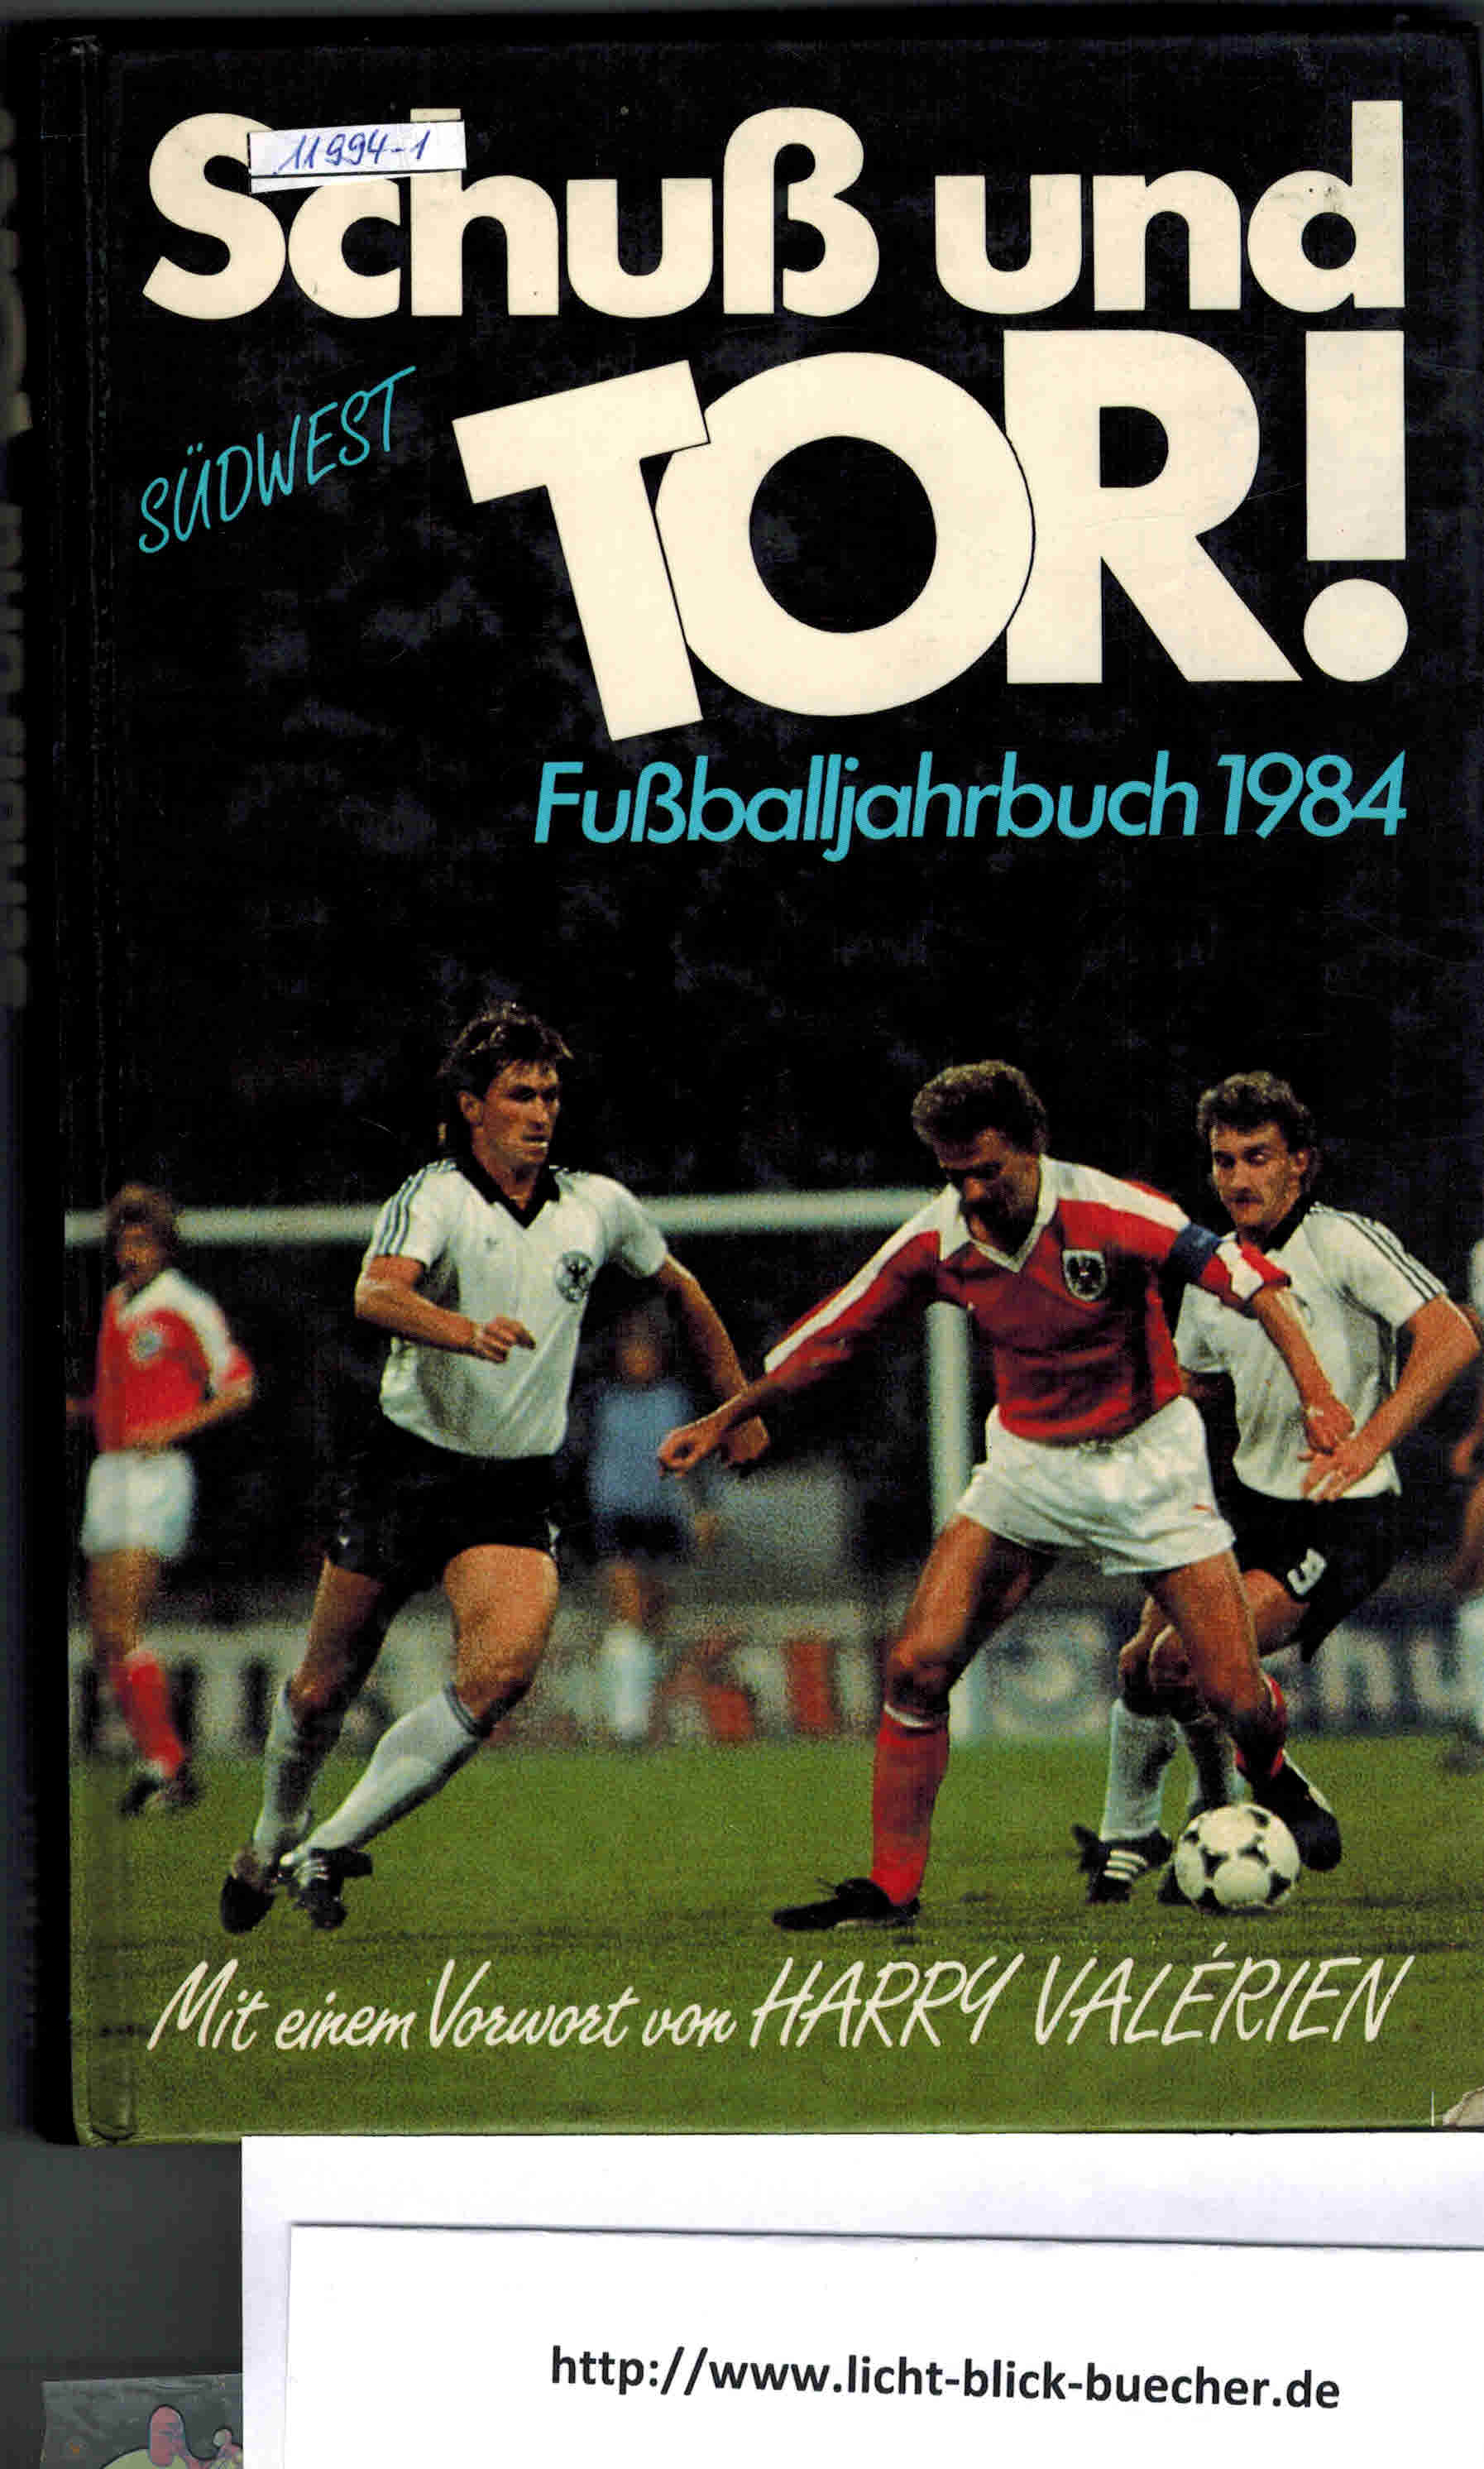 Schuss und Tor!Fussballjahrbuch 1984Hans Eiberle